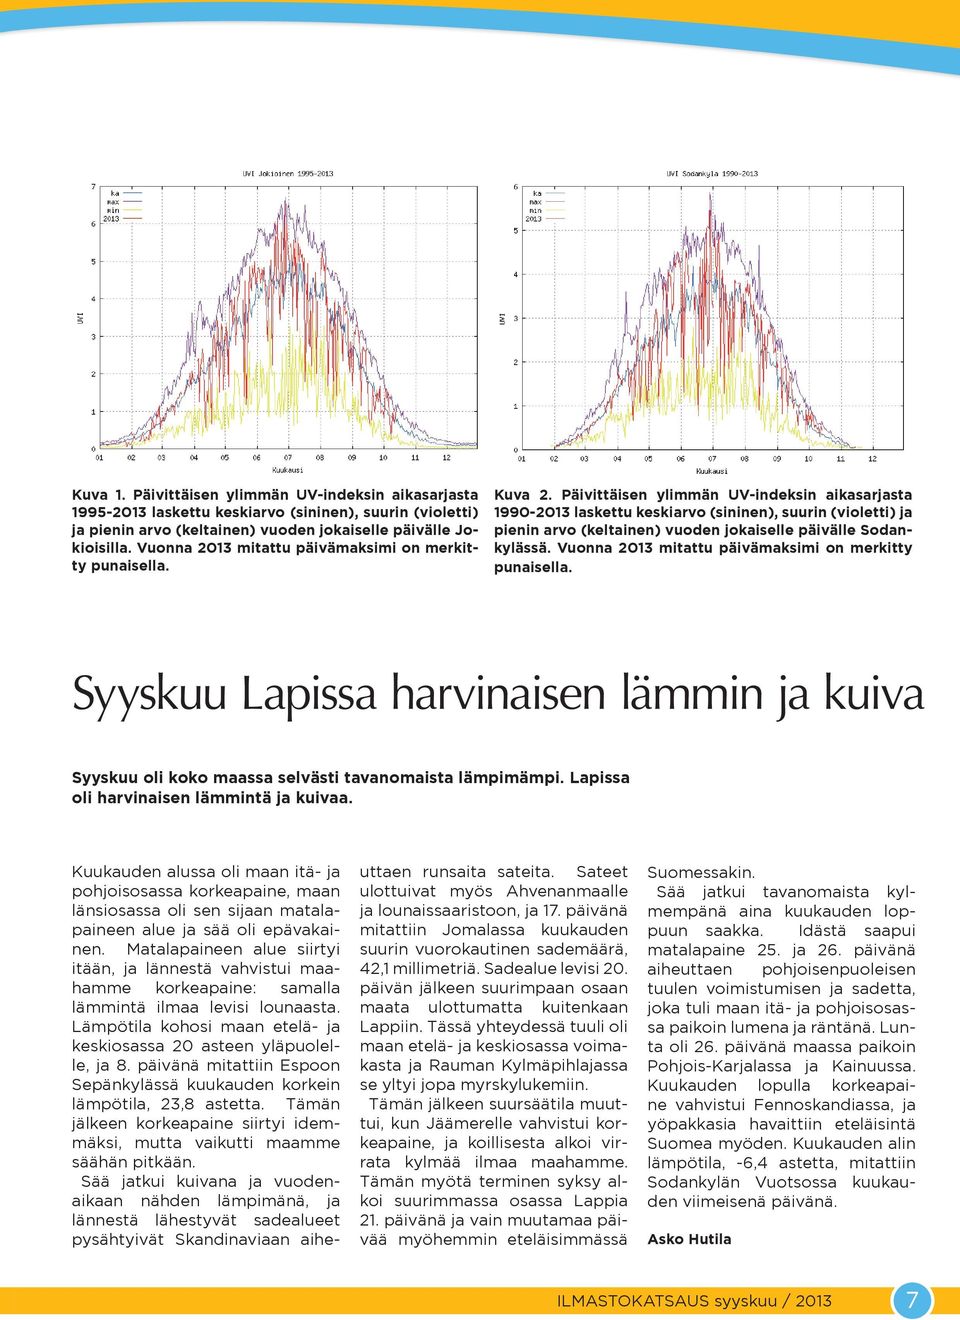 Päivittäisen ylimmän UV-indeksin aikasarjasta 199-13 laskettu keskiarvo (sininen), suurin (violetti) ja pienin arvo (keltainen) vuoden jokaiselle päivälle Sodankylässä.